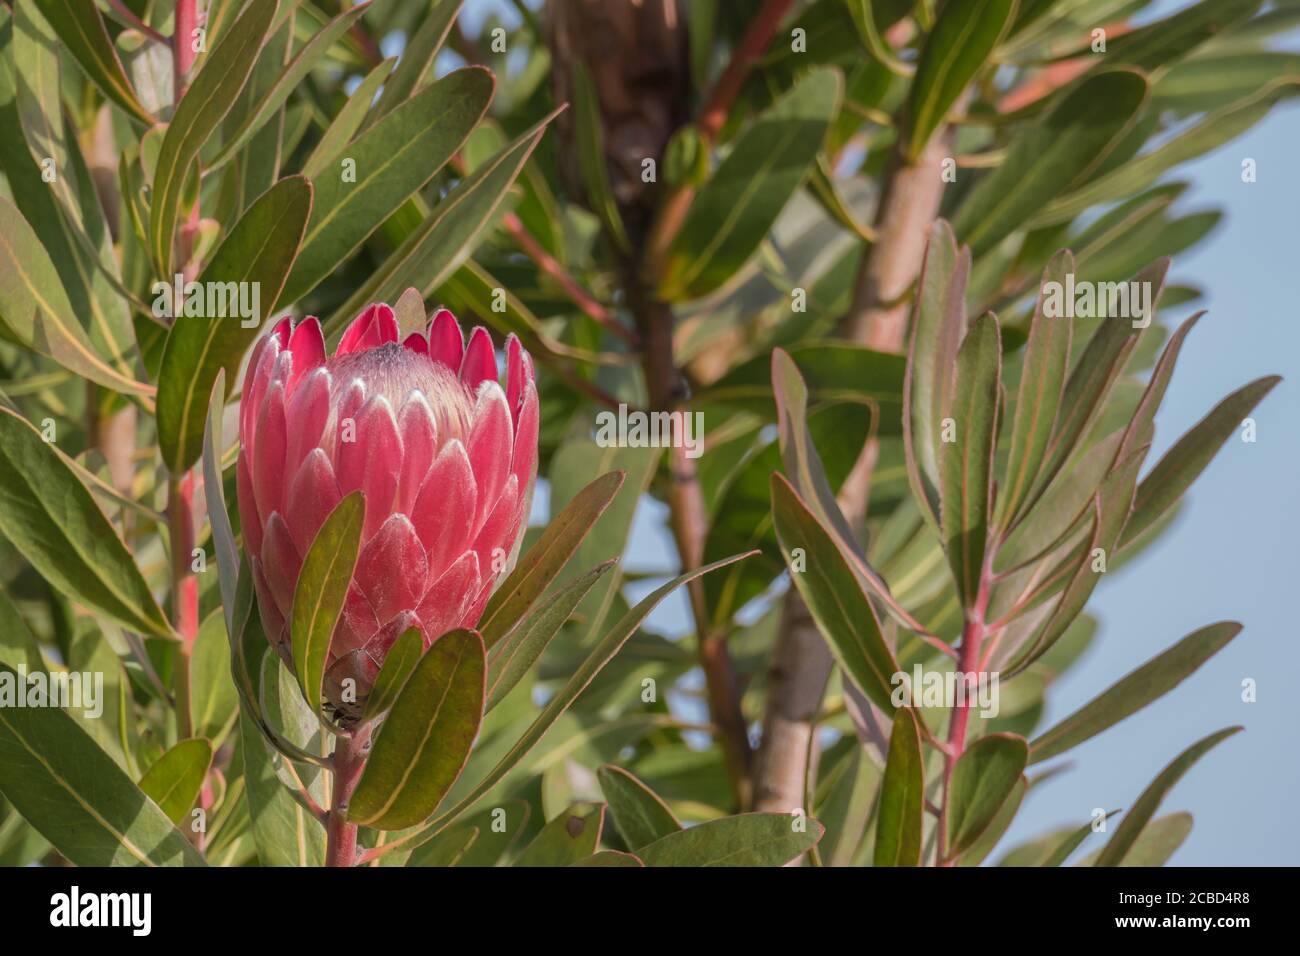 King protea Pflanze mit einer Blume im Freien wachsen Stockfotografie -  Alamy